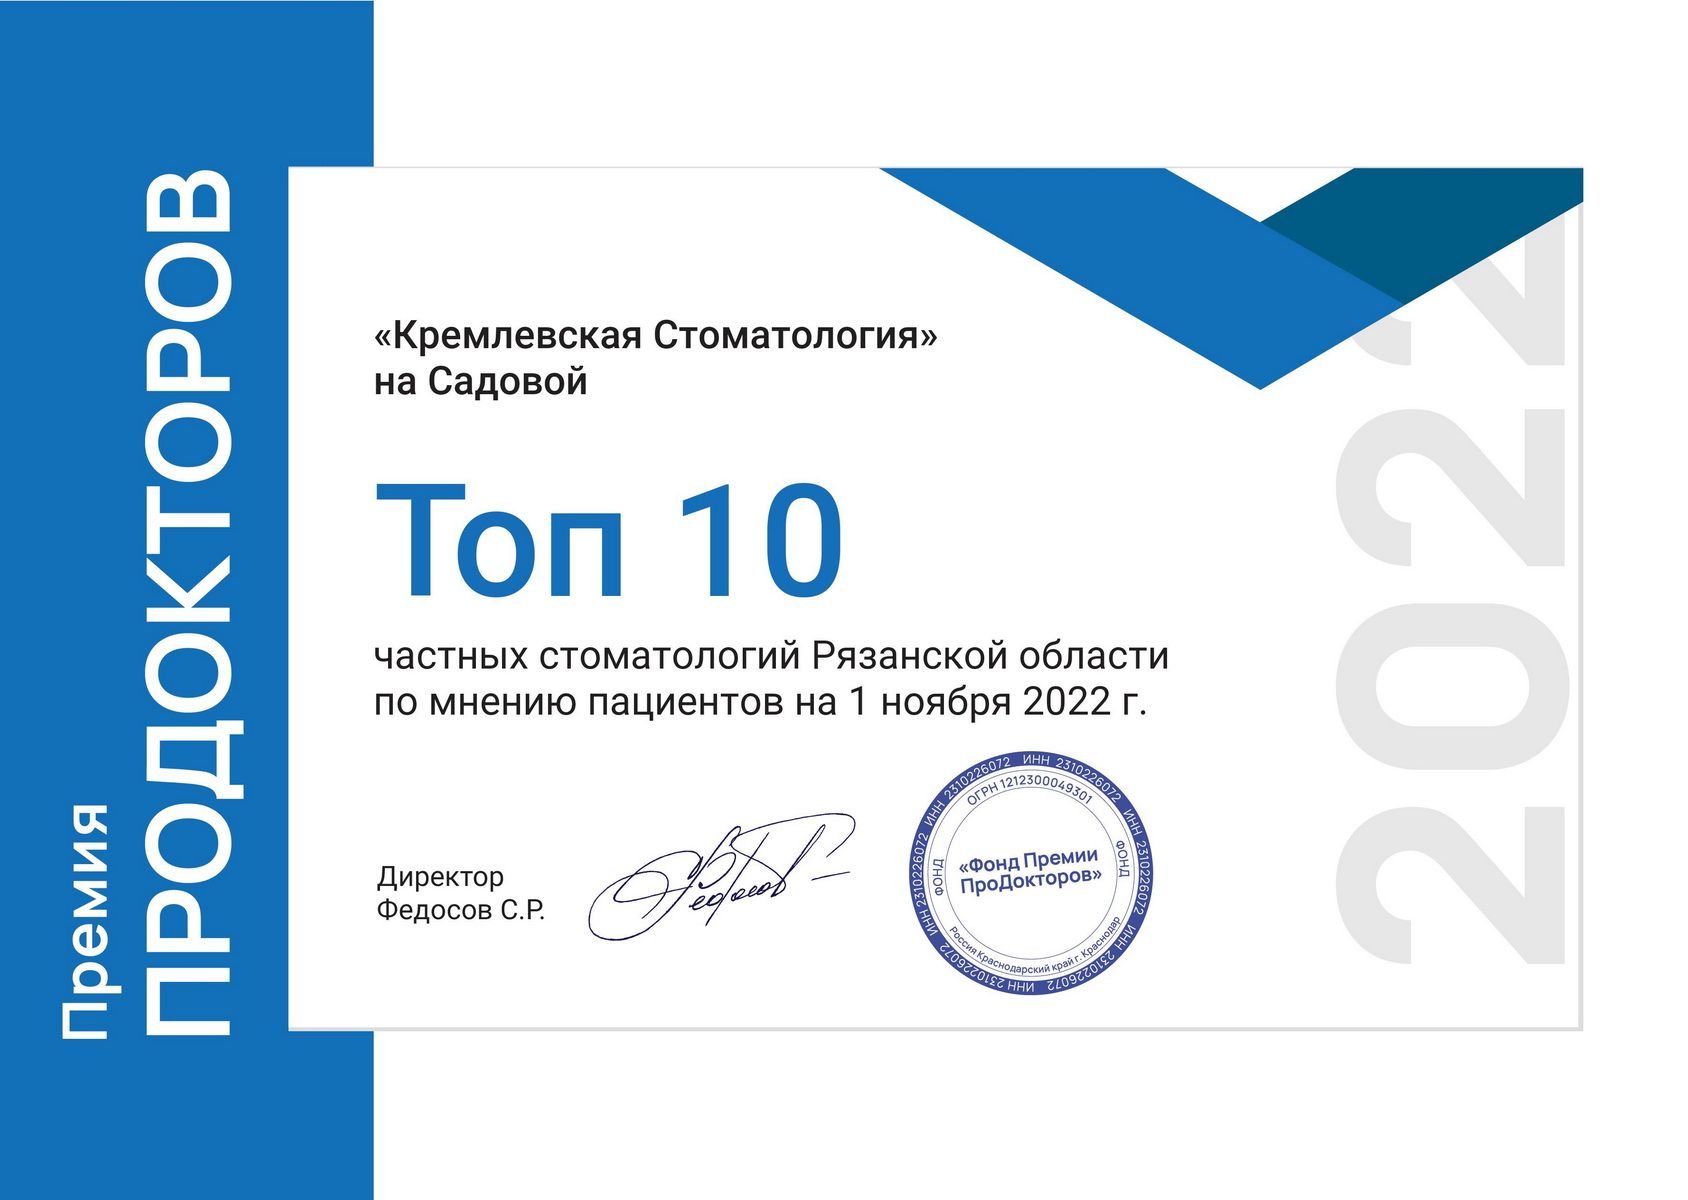 Кремлевская стоматология в ТОП-10 по версии портала ПроДокторов